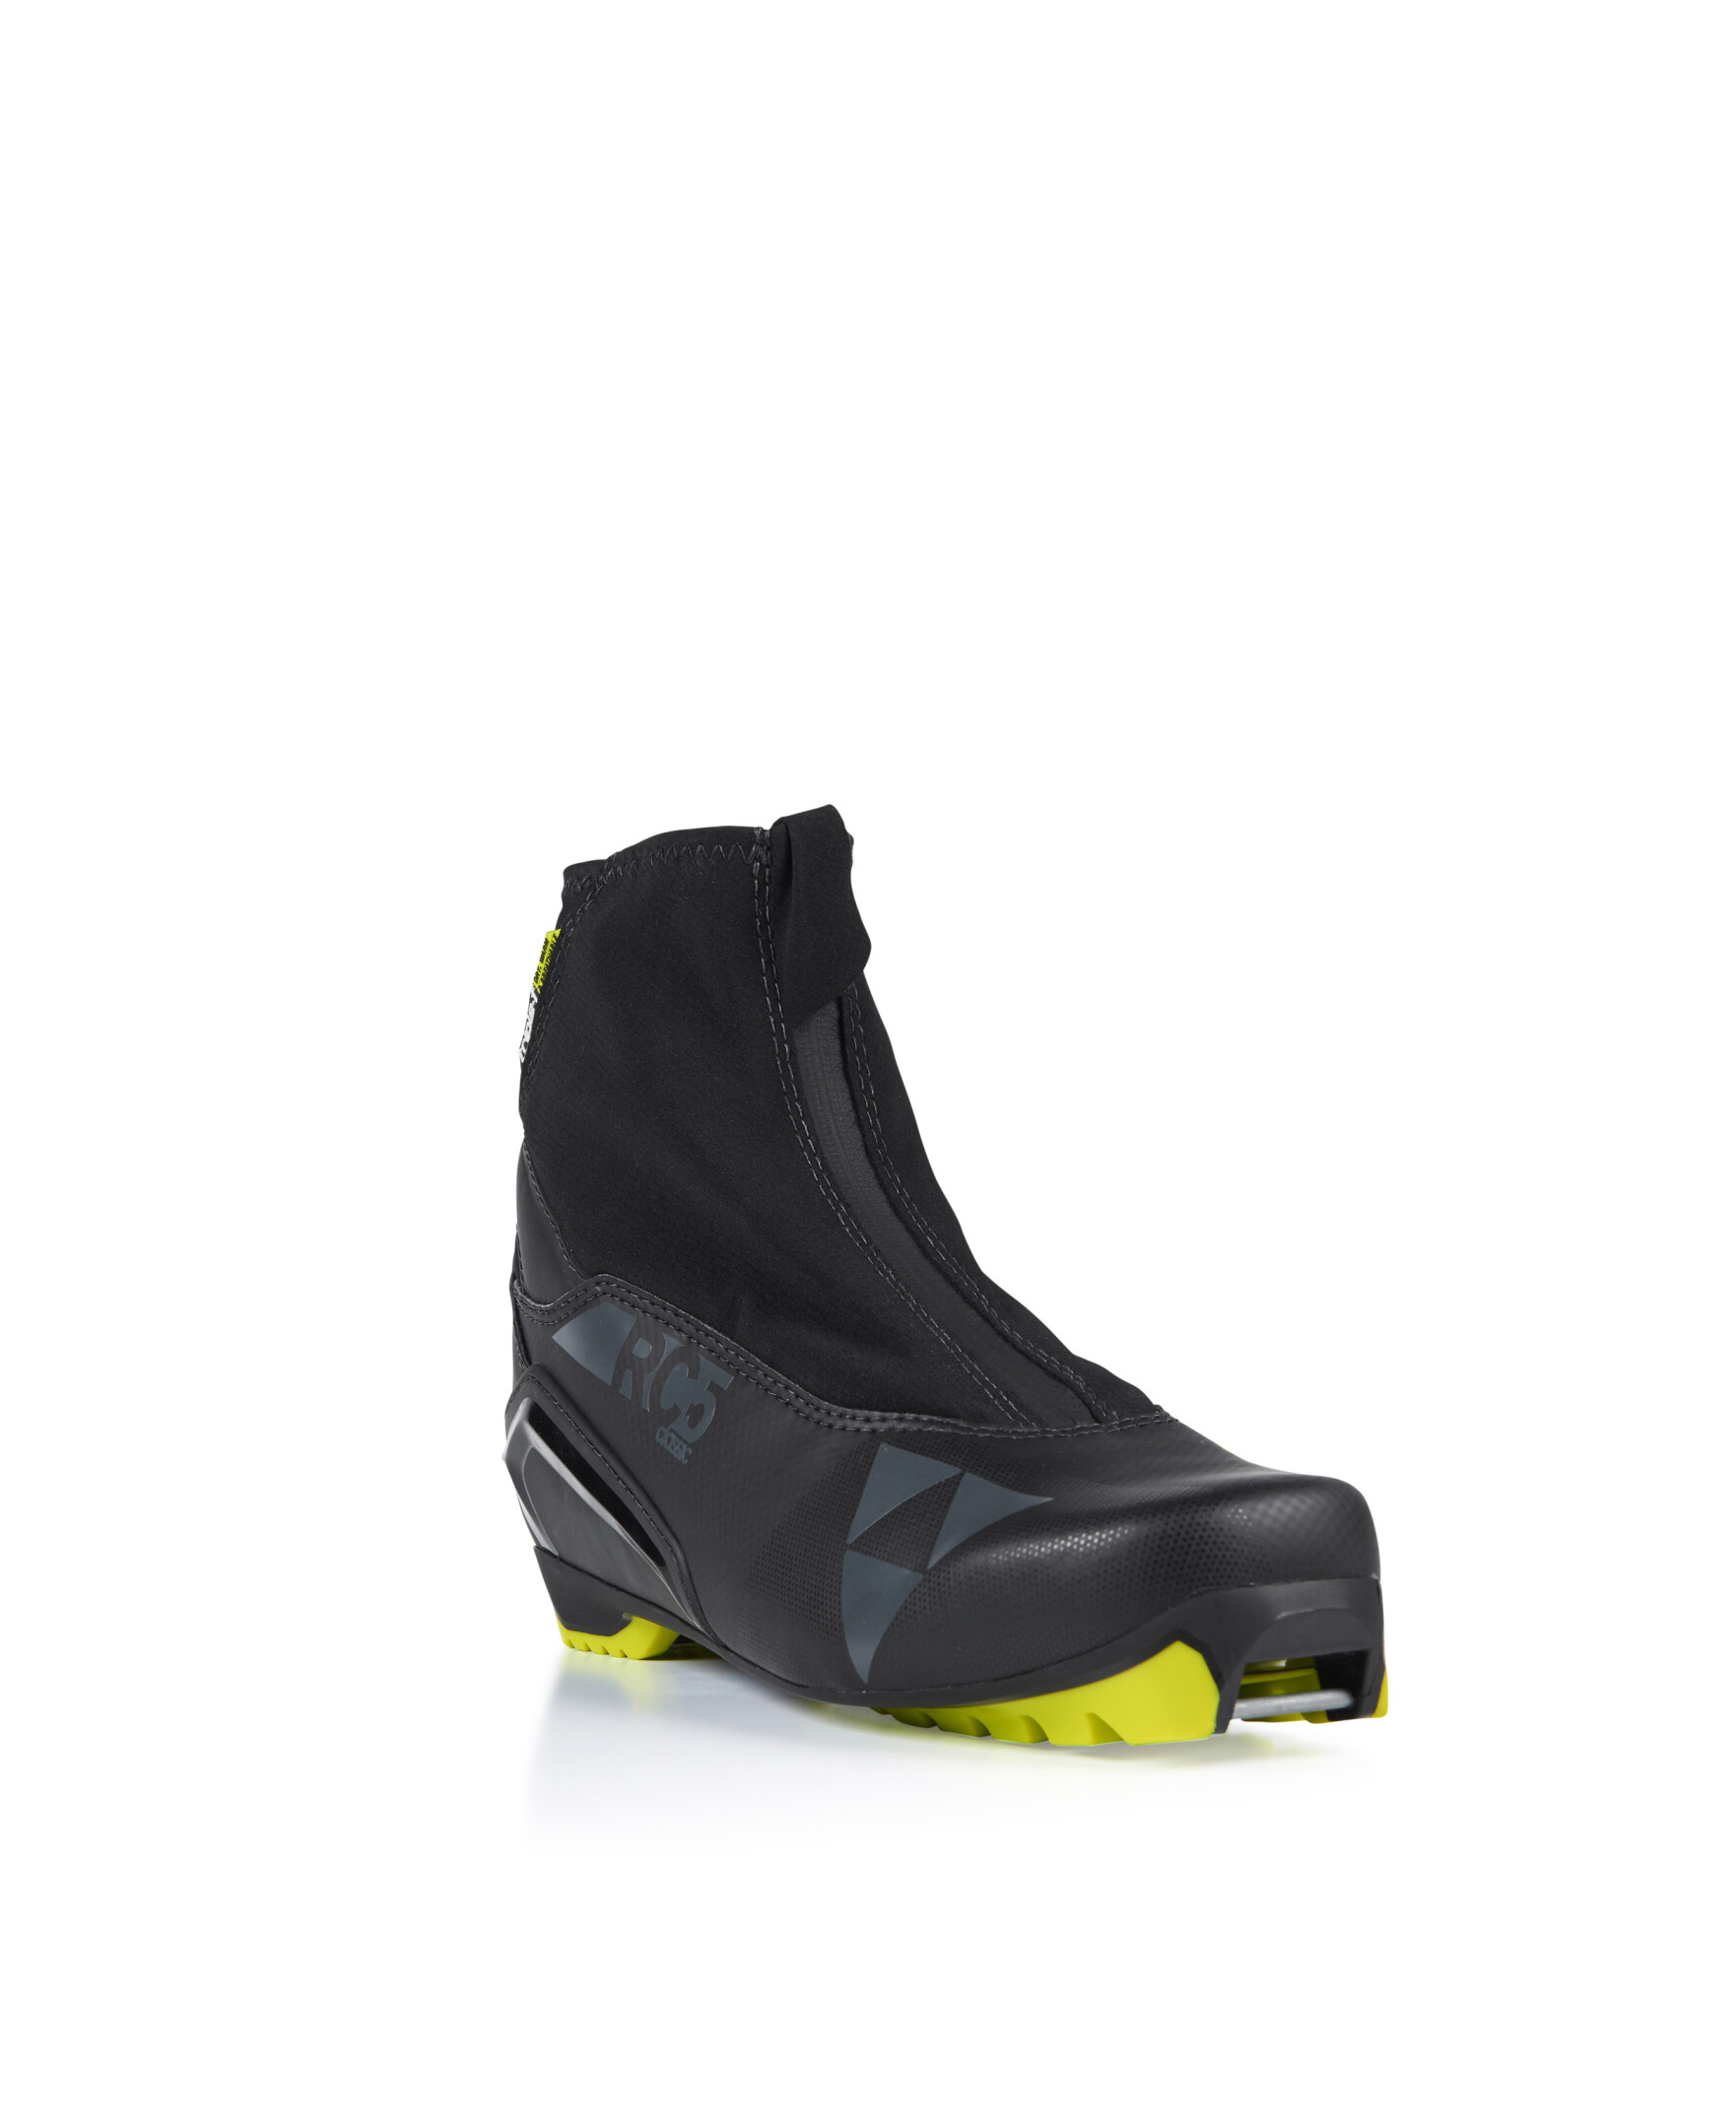 Ботинки лыжные FISCHER RC5 CLASSIC